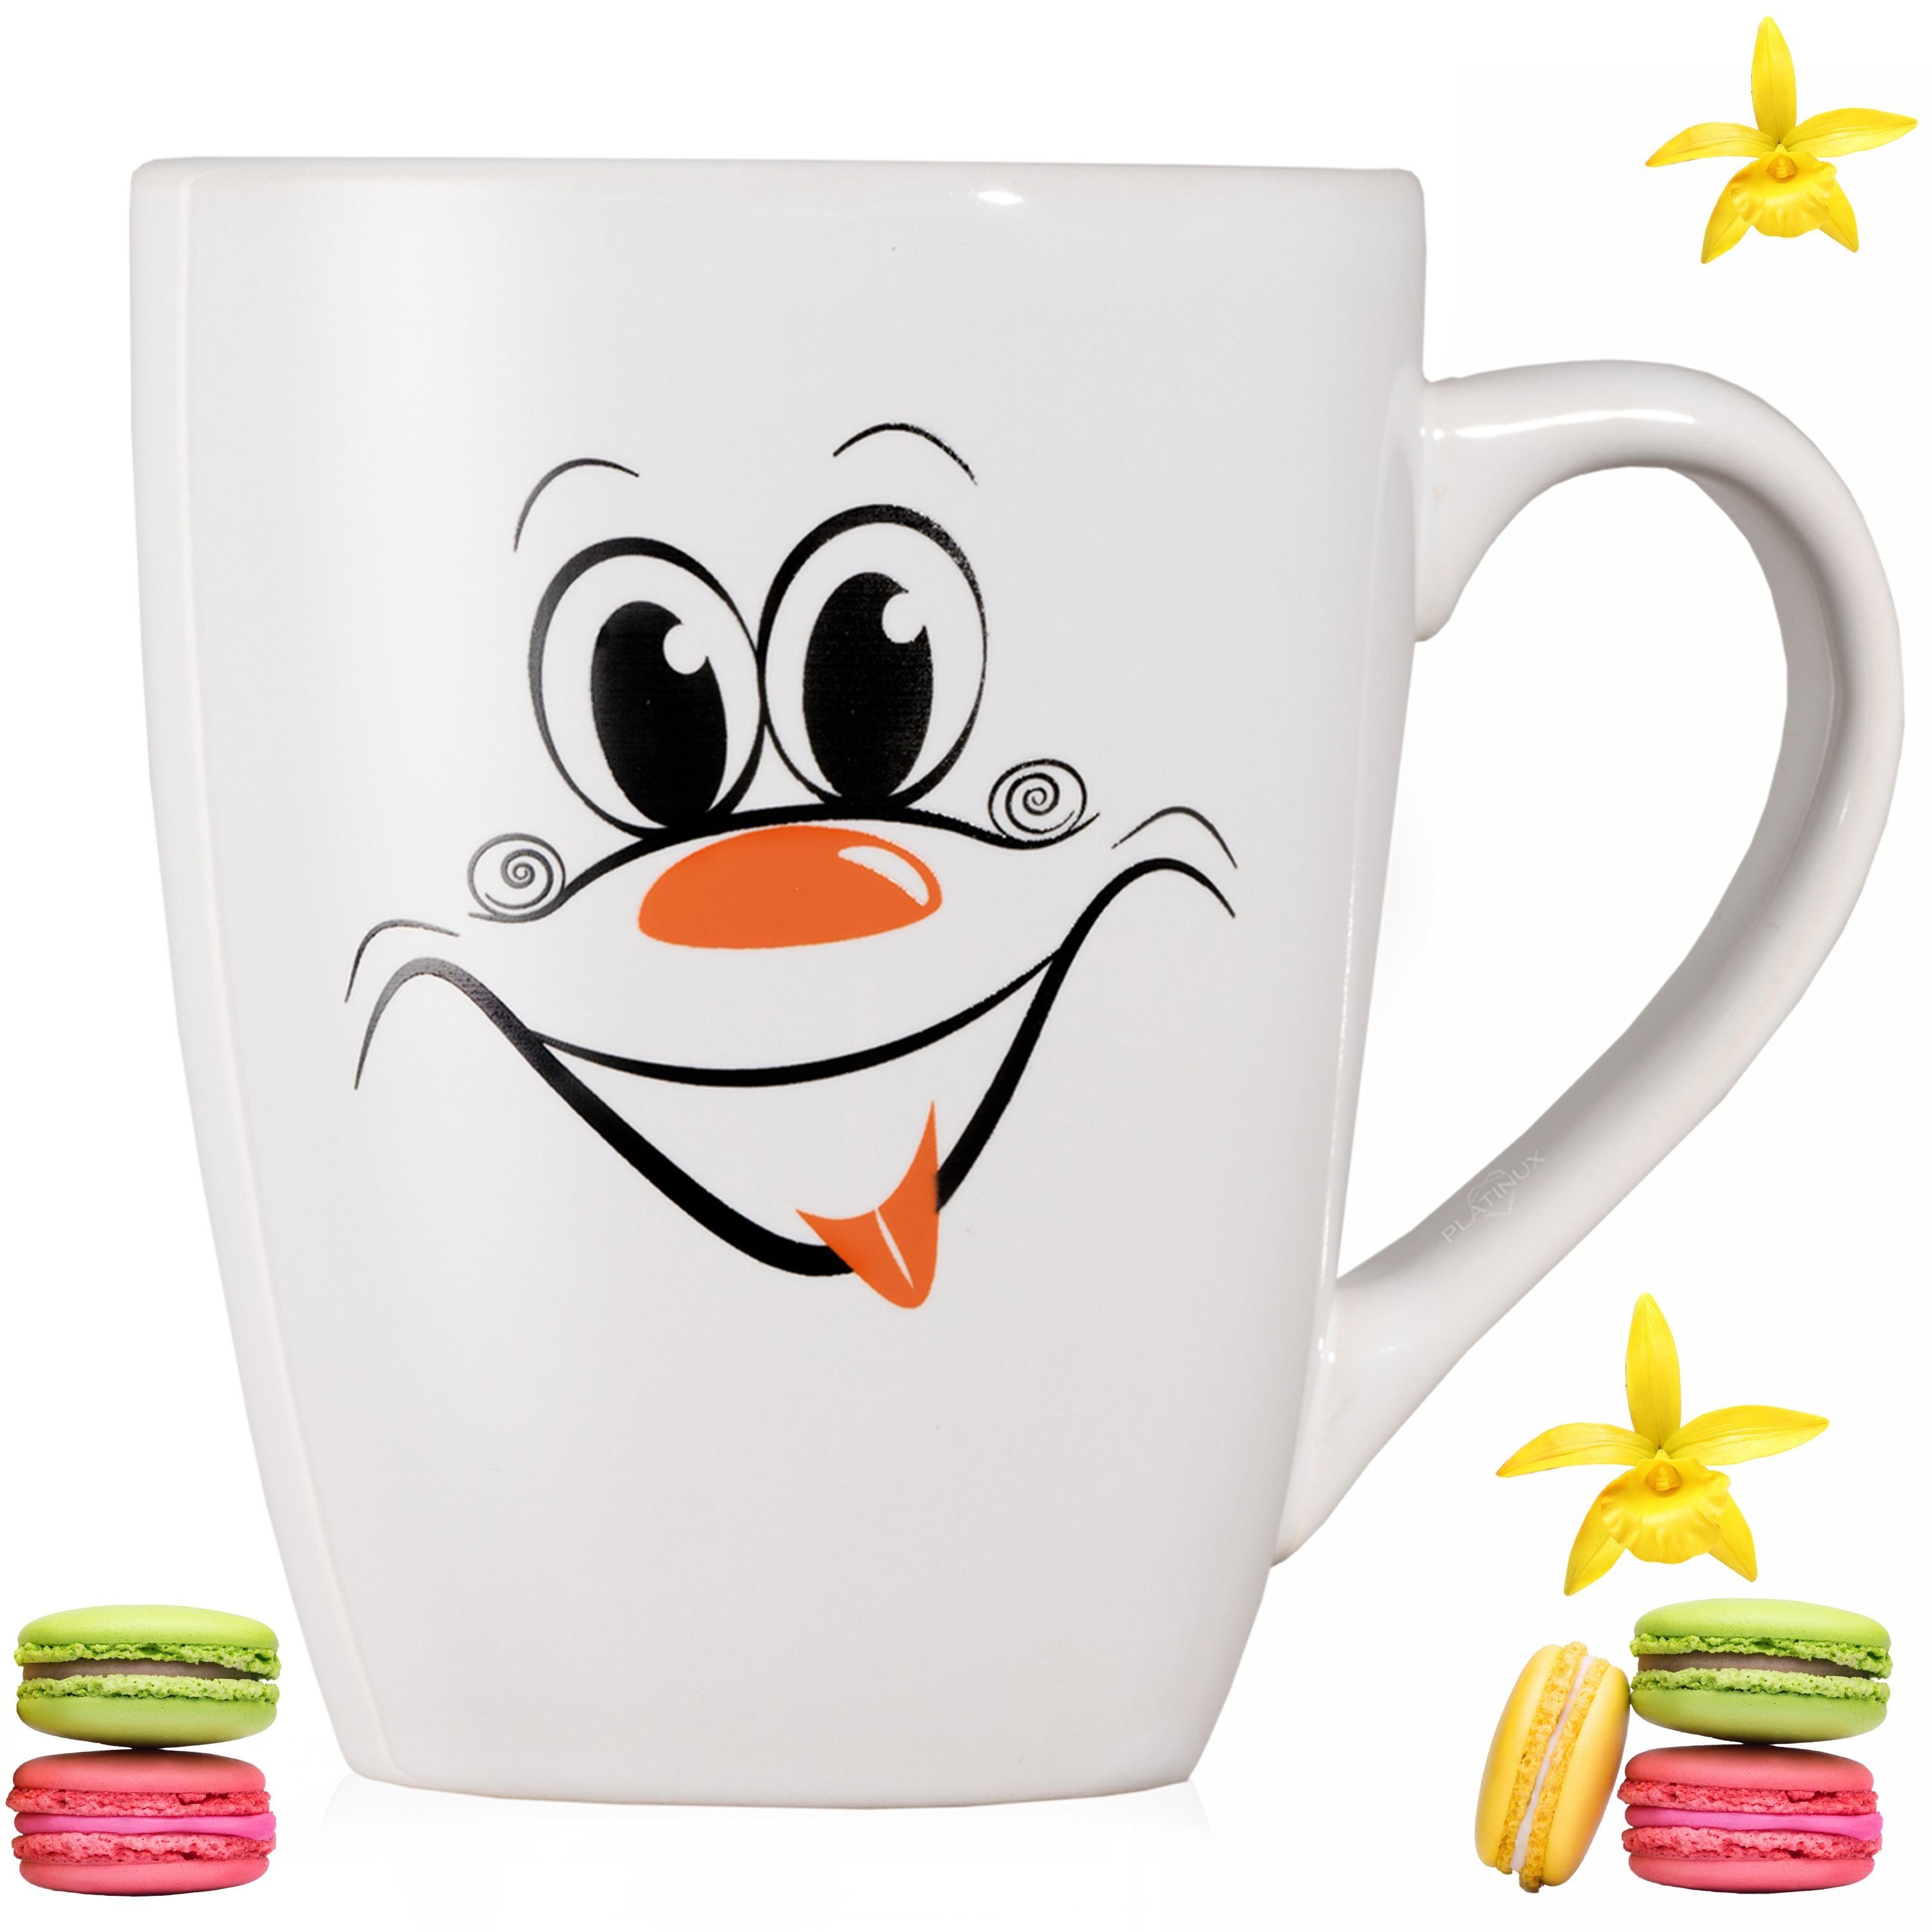 PLATINUX Tasse Kaffeetasse 250ml Orange, Teebecher Keramik, Motiv (max. mit Karneval lustigem 300ml) Kaffeebecher Teetasse lachendem